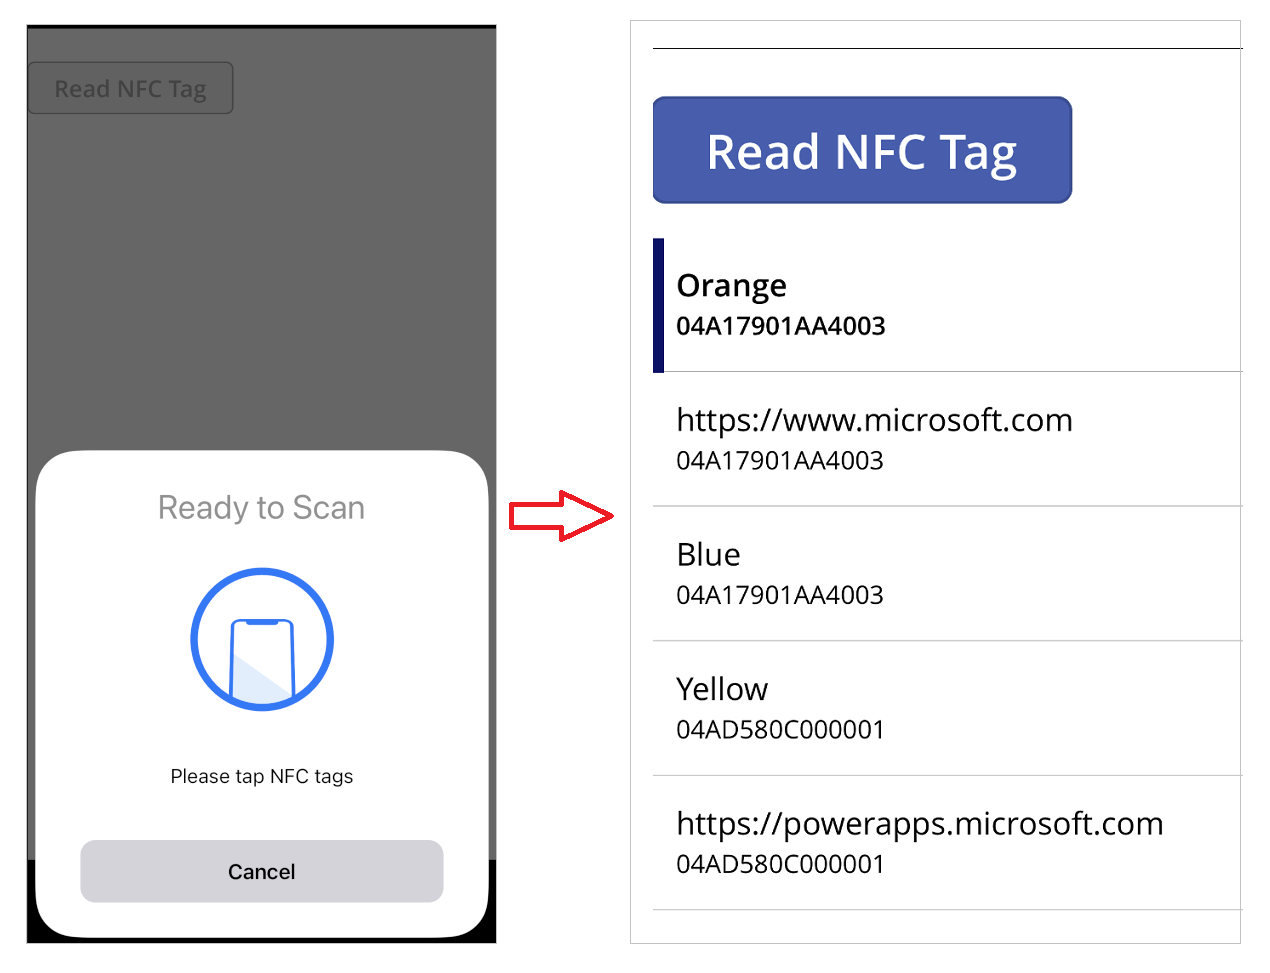 App op mobiel apparaat met het NFC-tag-leesvoorbeeld en het resultaat in de galerie.